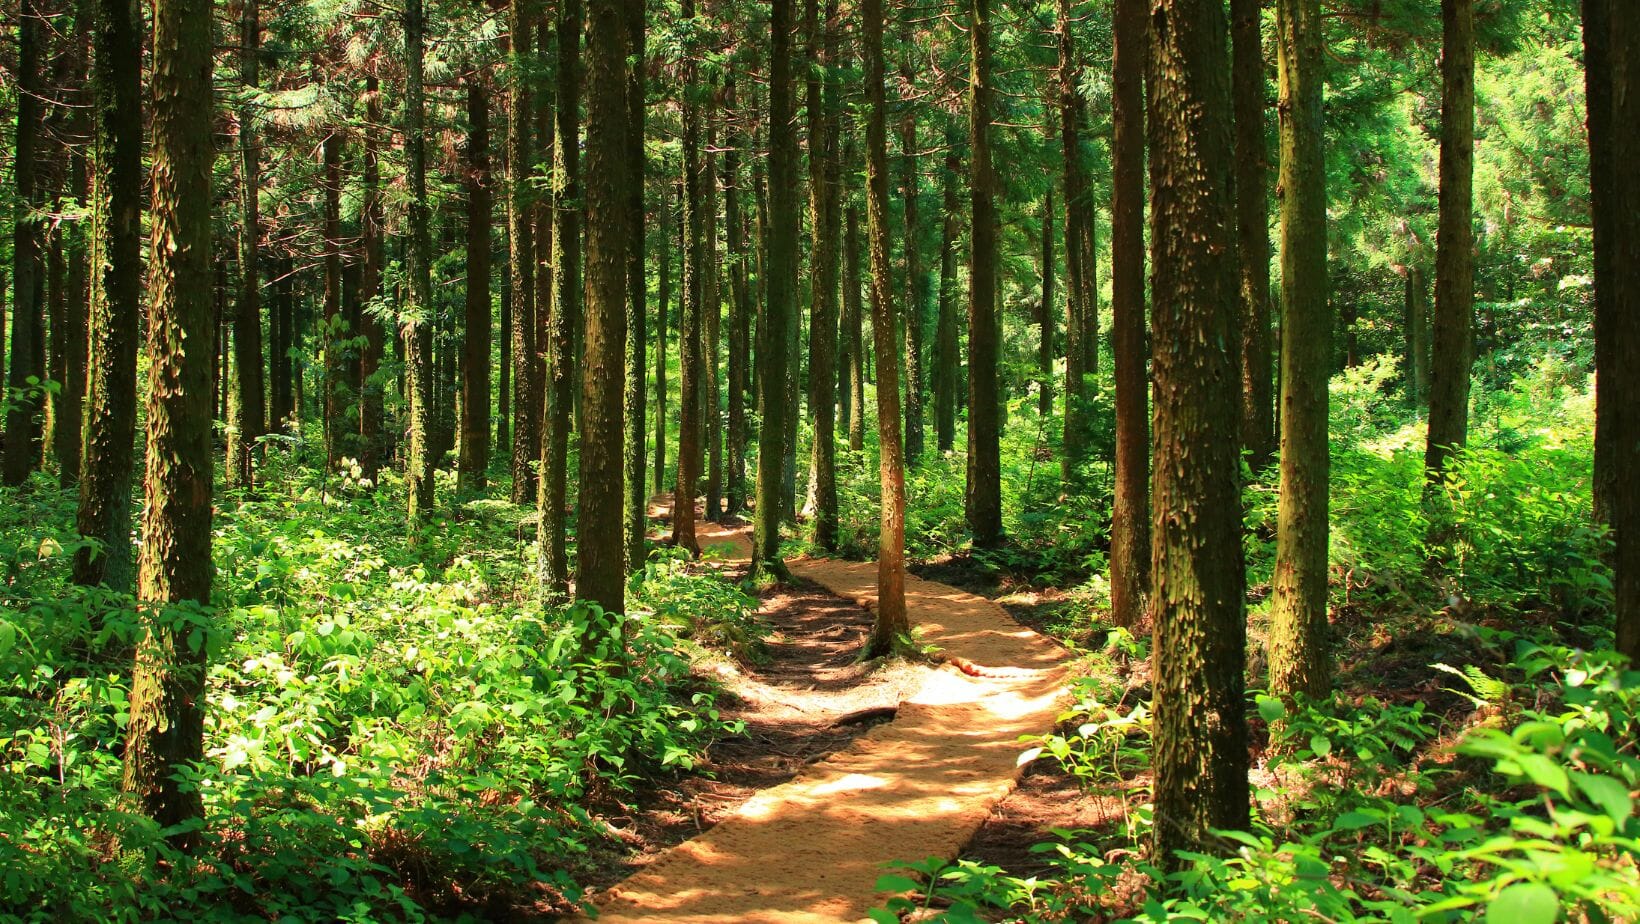 Mit Wald und Stille entspannter in den Alltag - durch mehr Achtsamkeit die Natur anders erleben